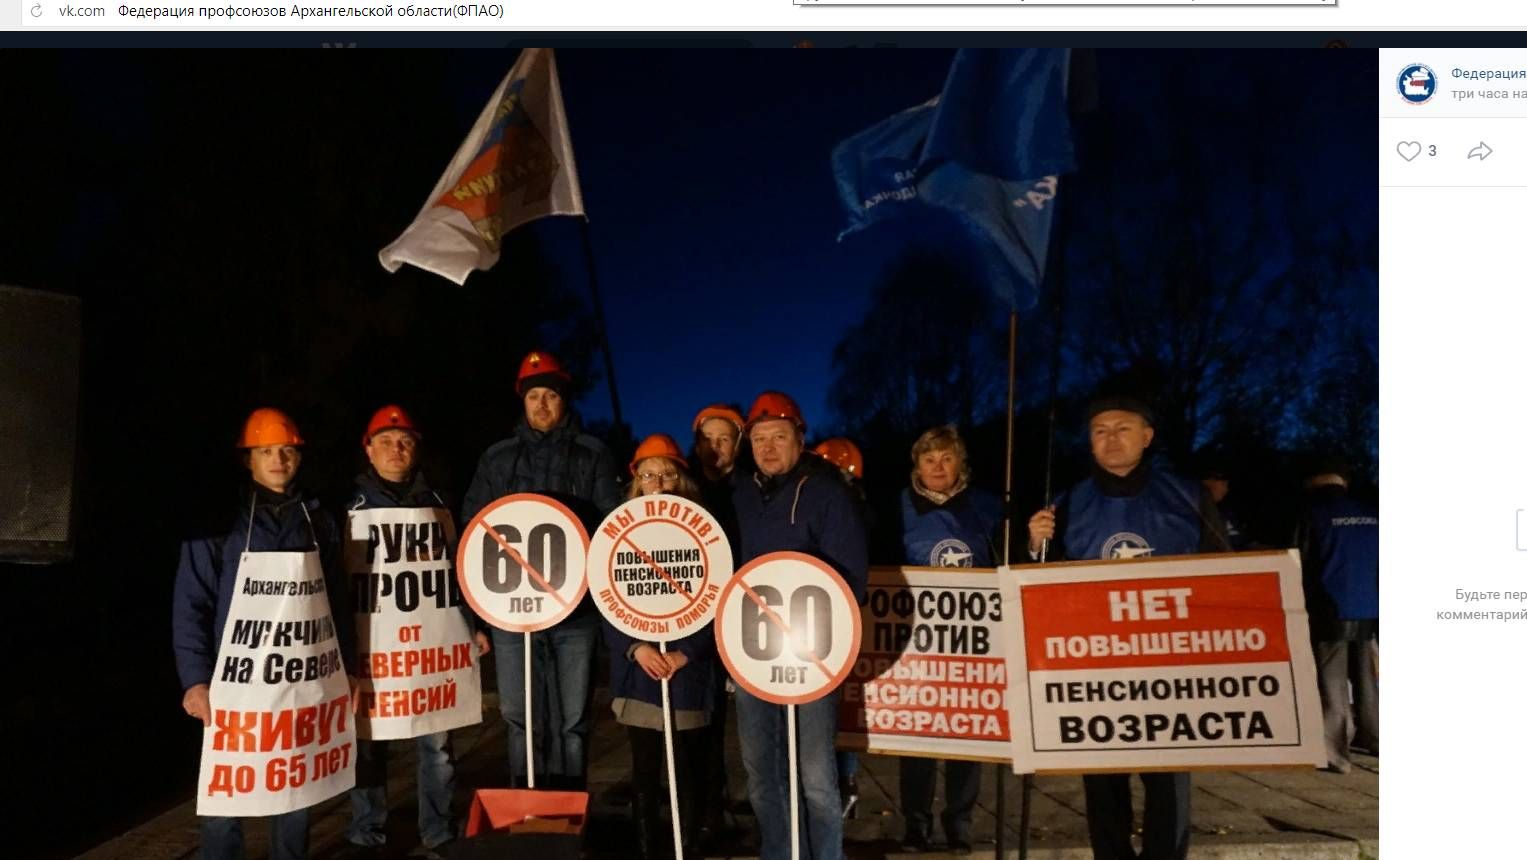 Митинг против повышения пенсионного возраста (скрин). Архангельск